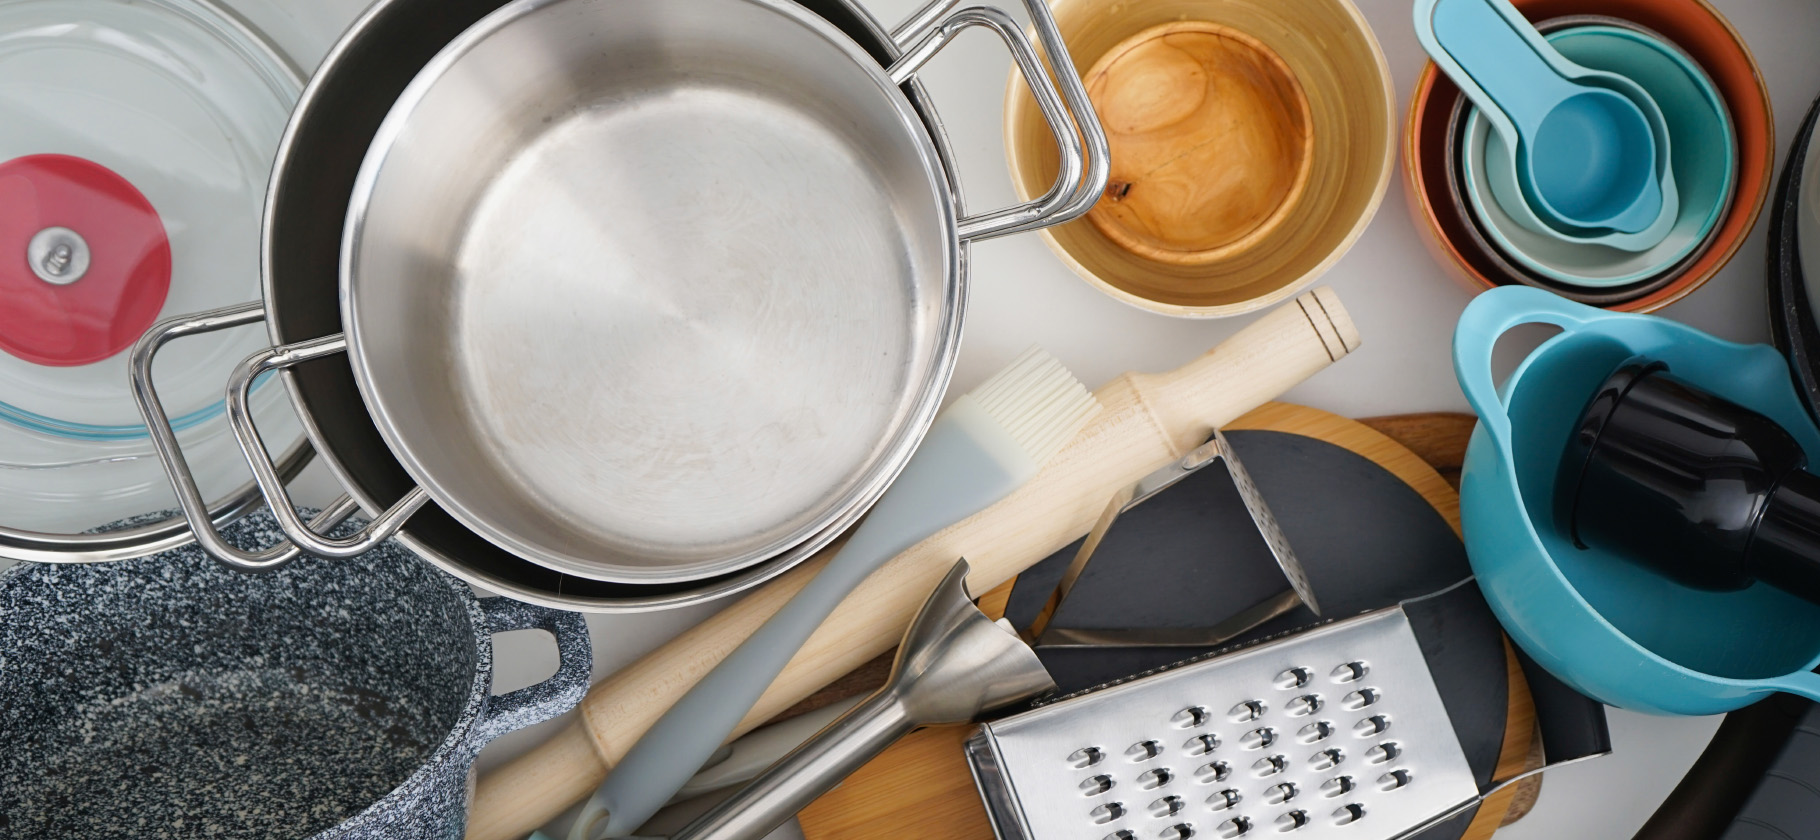 Действительно ли кухонная посуда может быть опасной? Разбираем 4 популярных материала